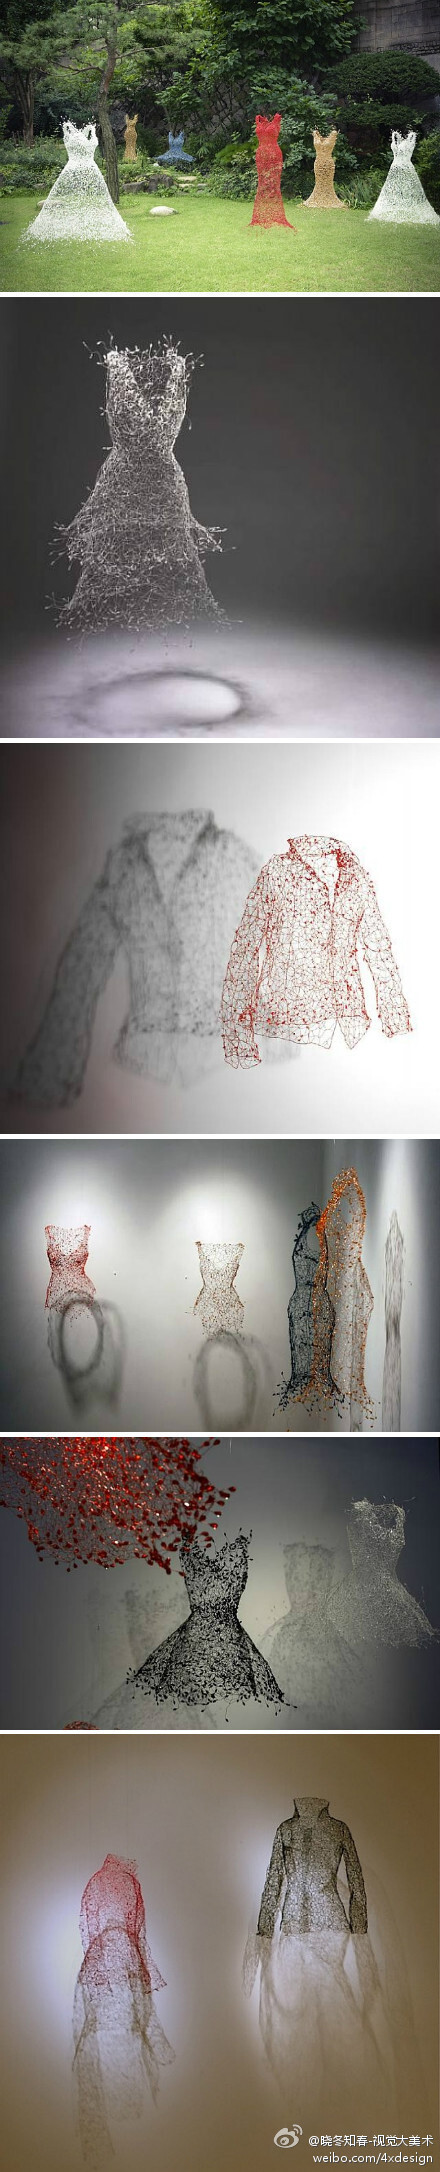 韩国艺术家Keysook Geum仅仅用铁丝完成了这组生动而轻盈的晚装雕塑系列。泡沫一般的悬浮着。看不见衣服的主人，但这些衣服却仿佛是活的。晓冬知春